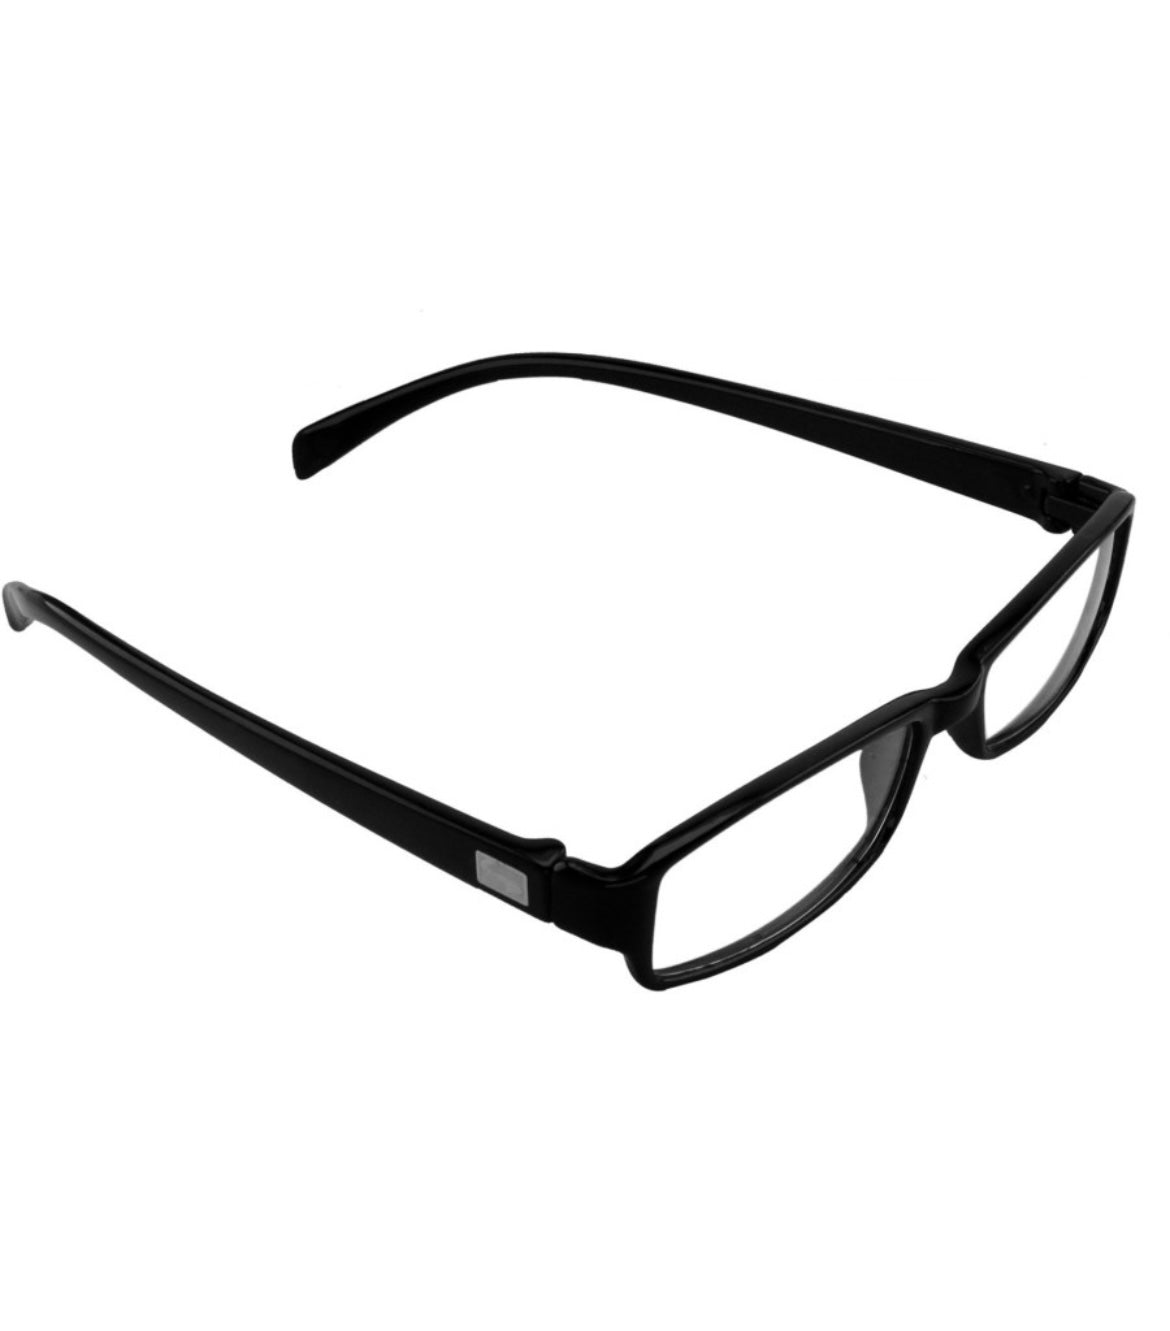 Jodykoes Reading Half Eye Shape Glasses (Black) - Jodykoes ®